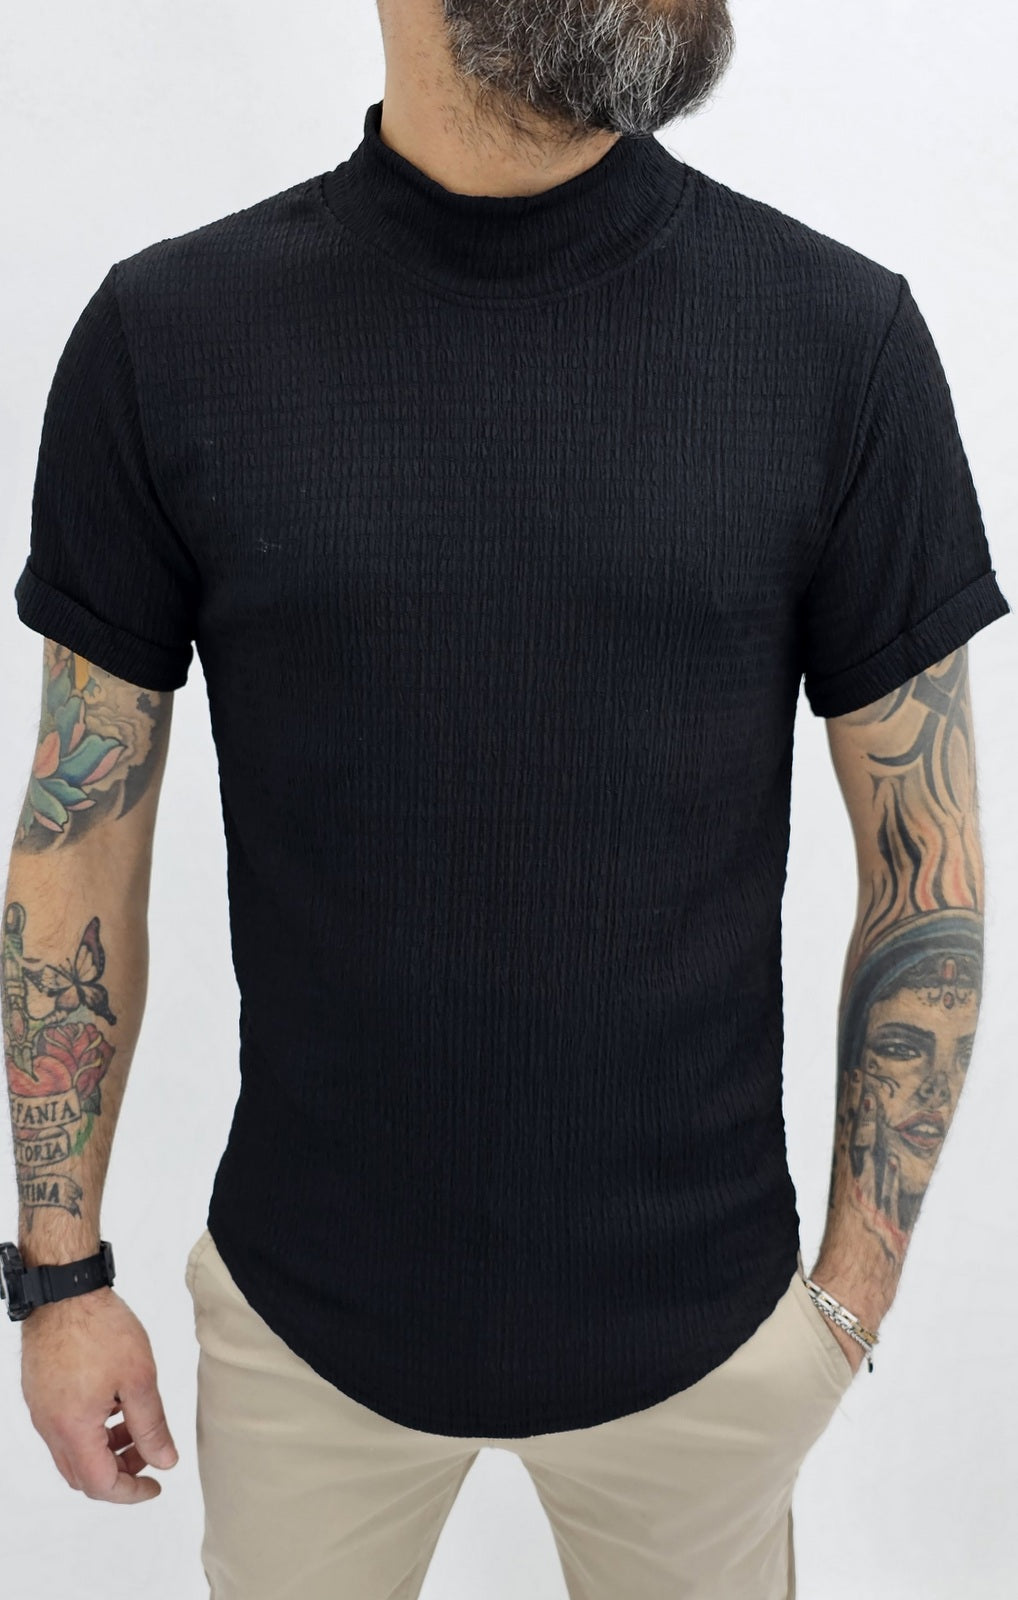 Maglia uomo mezzo collo alto Camicia elastica t-shirt  nero/marrone